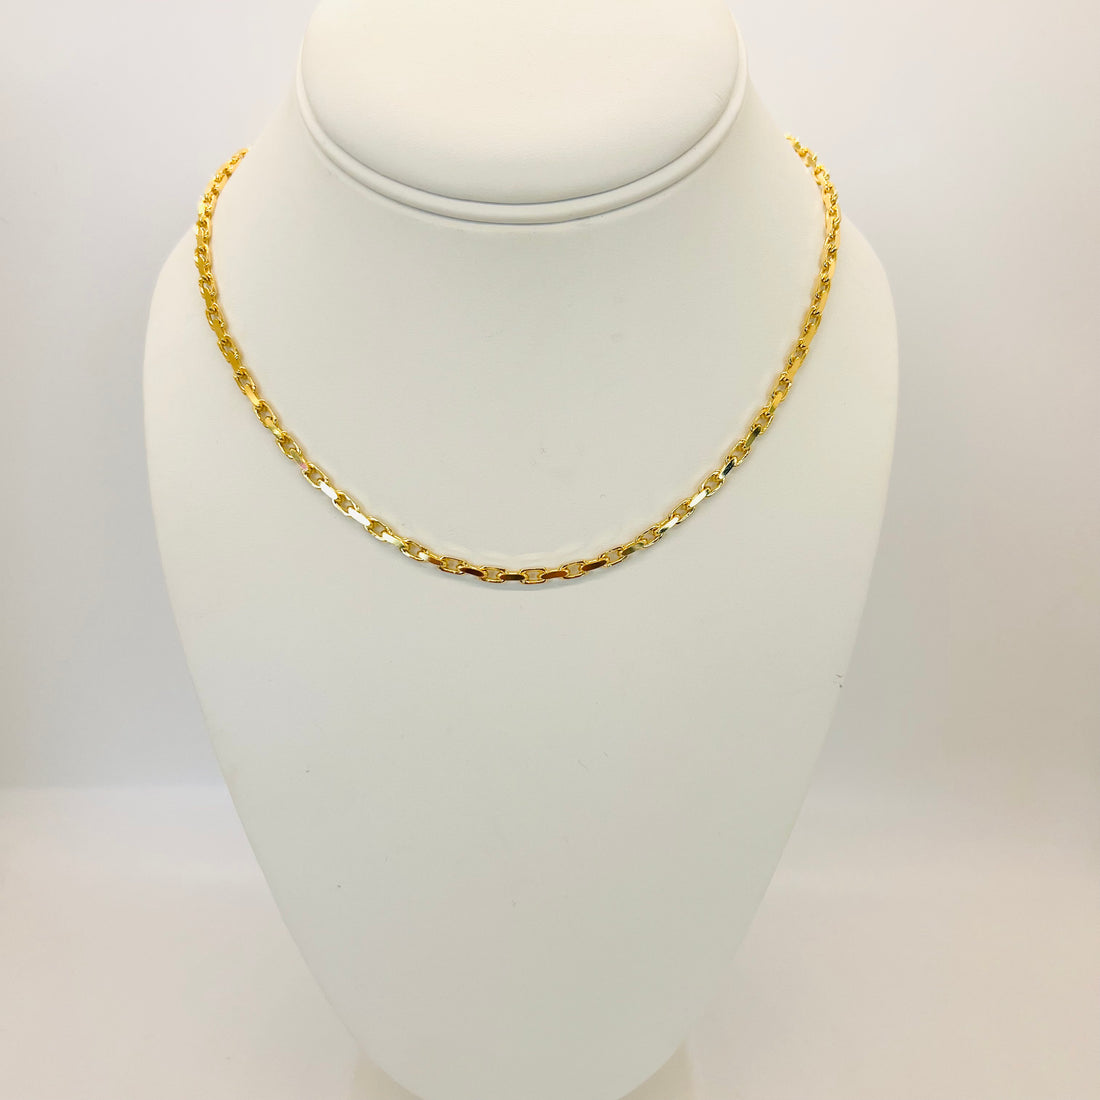 14k gold hermes necklace